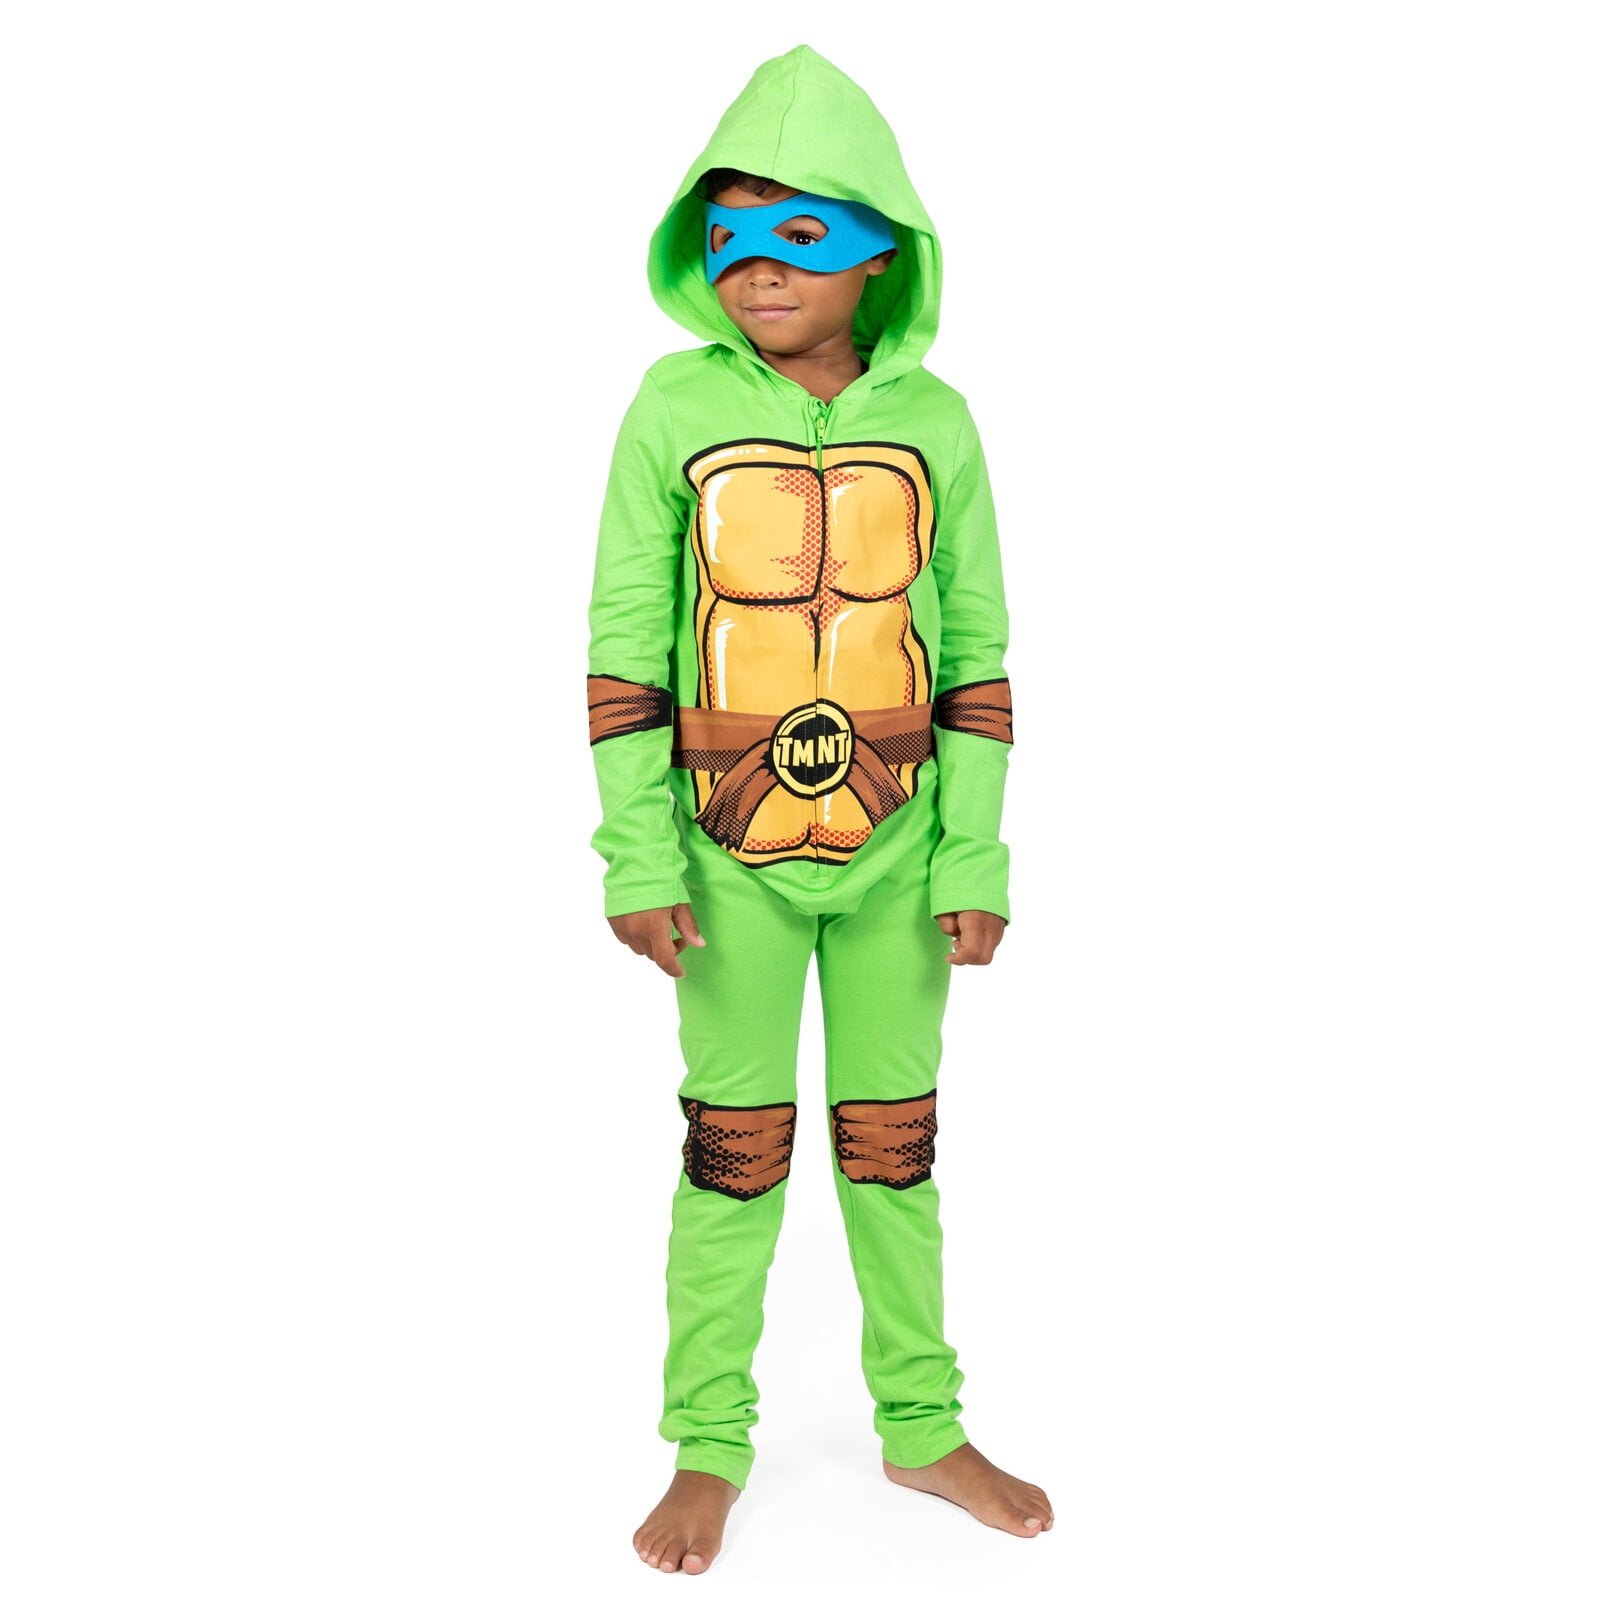 12 18 month ninja turtle costume